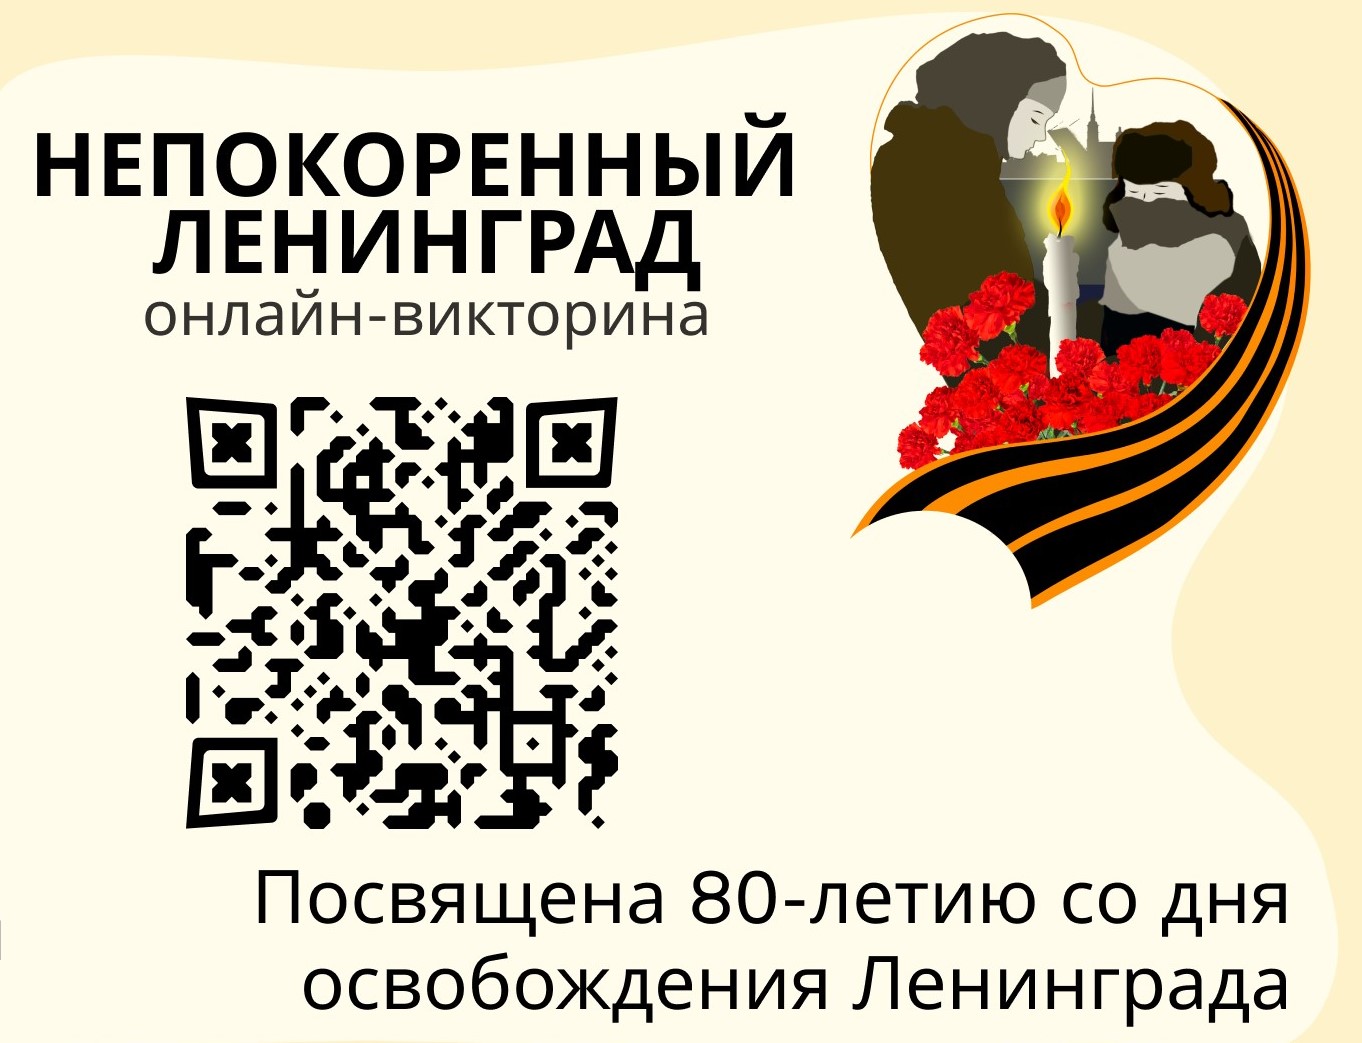 Туляков приглашают принять участие в онлайн-викторине, посвящённой 80-летию снятия блокады Ленинграда.